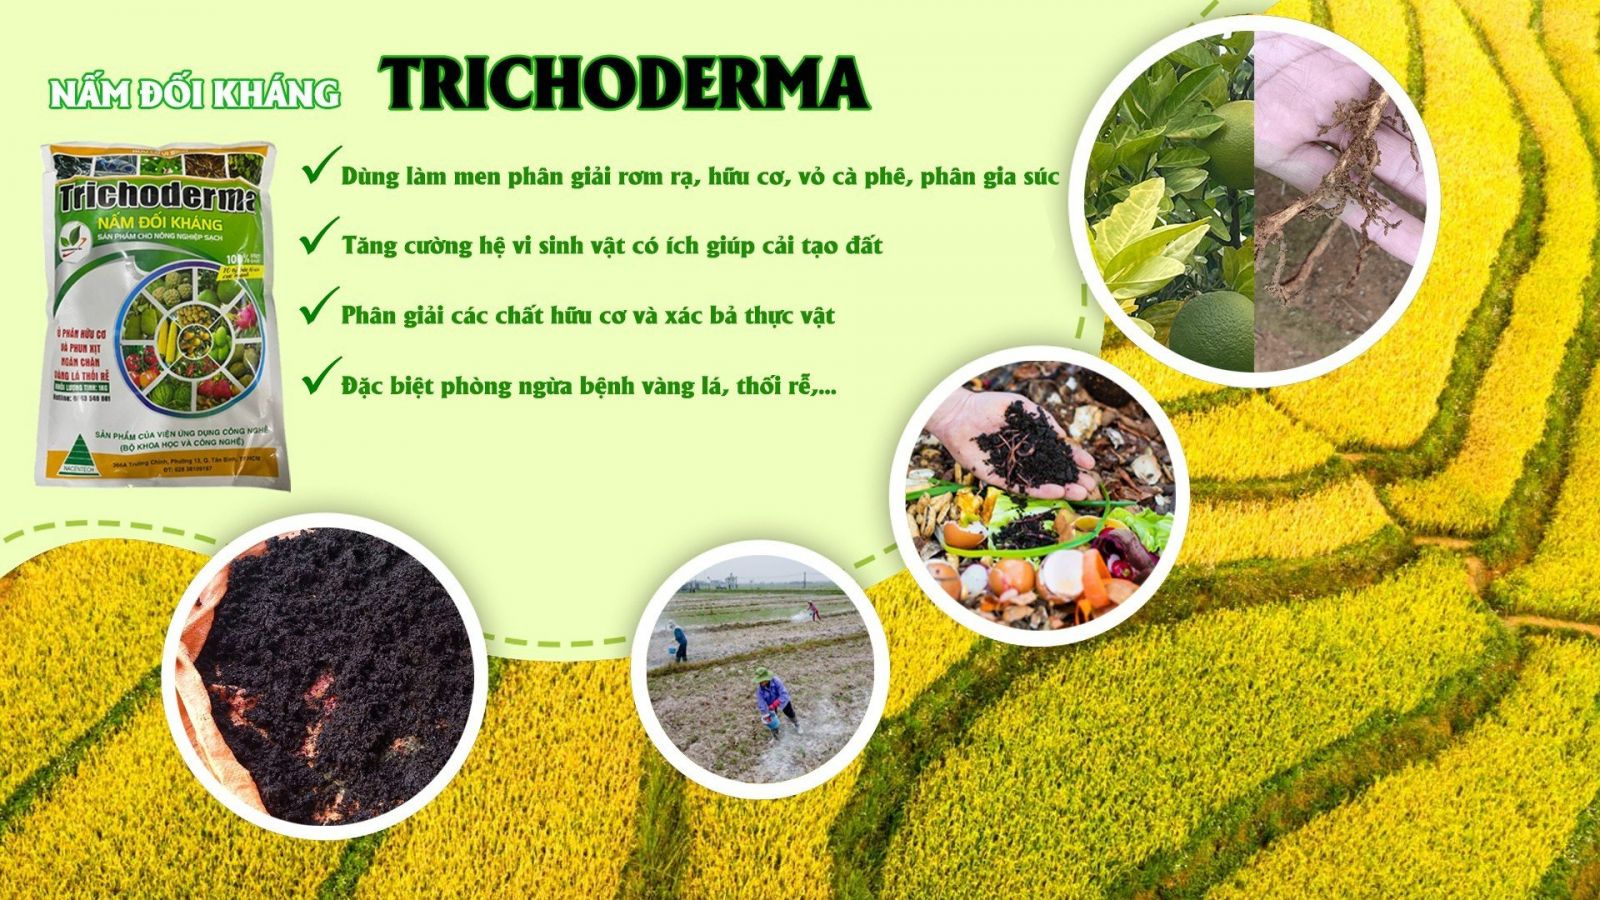 Nâm Trichoderma được dùng cho cây trồng